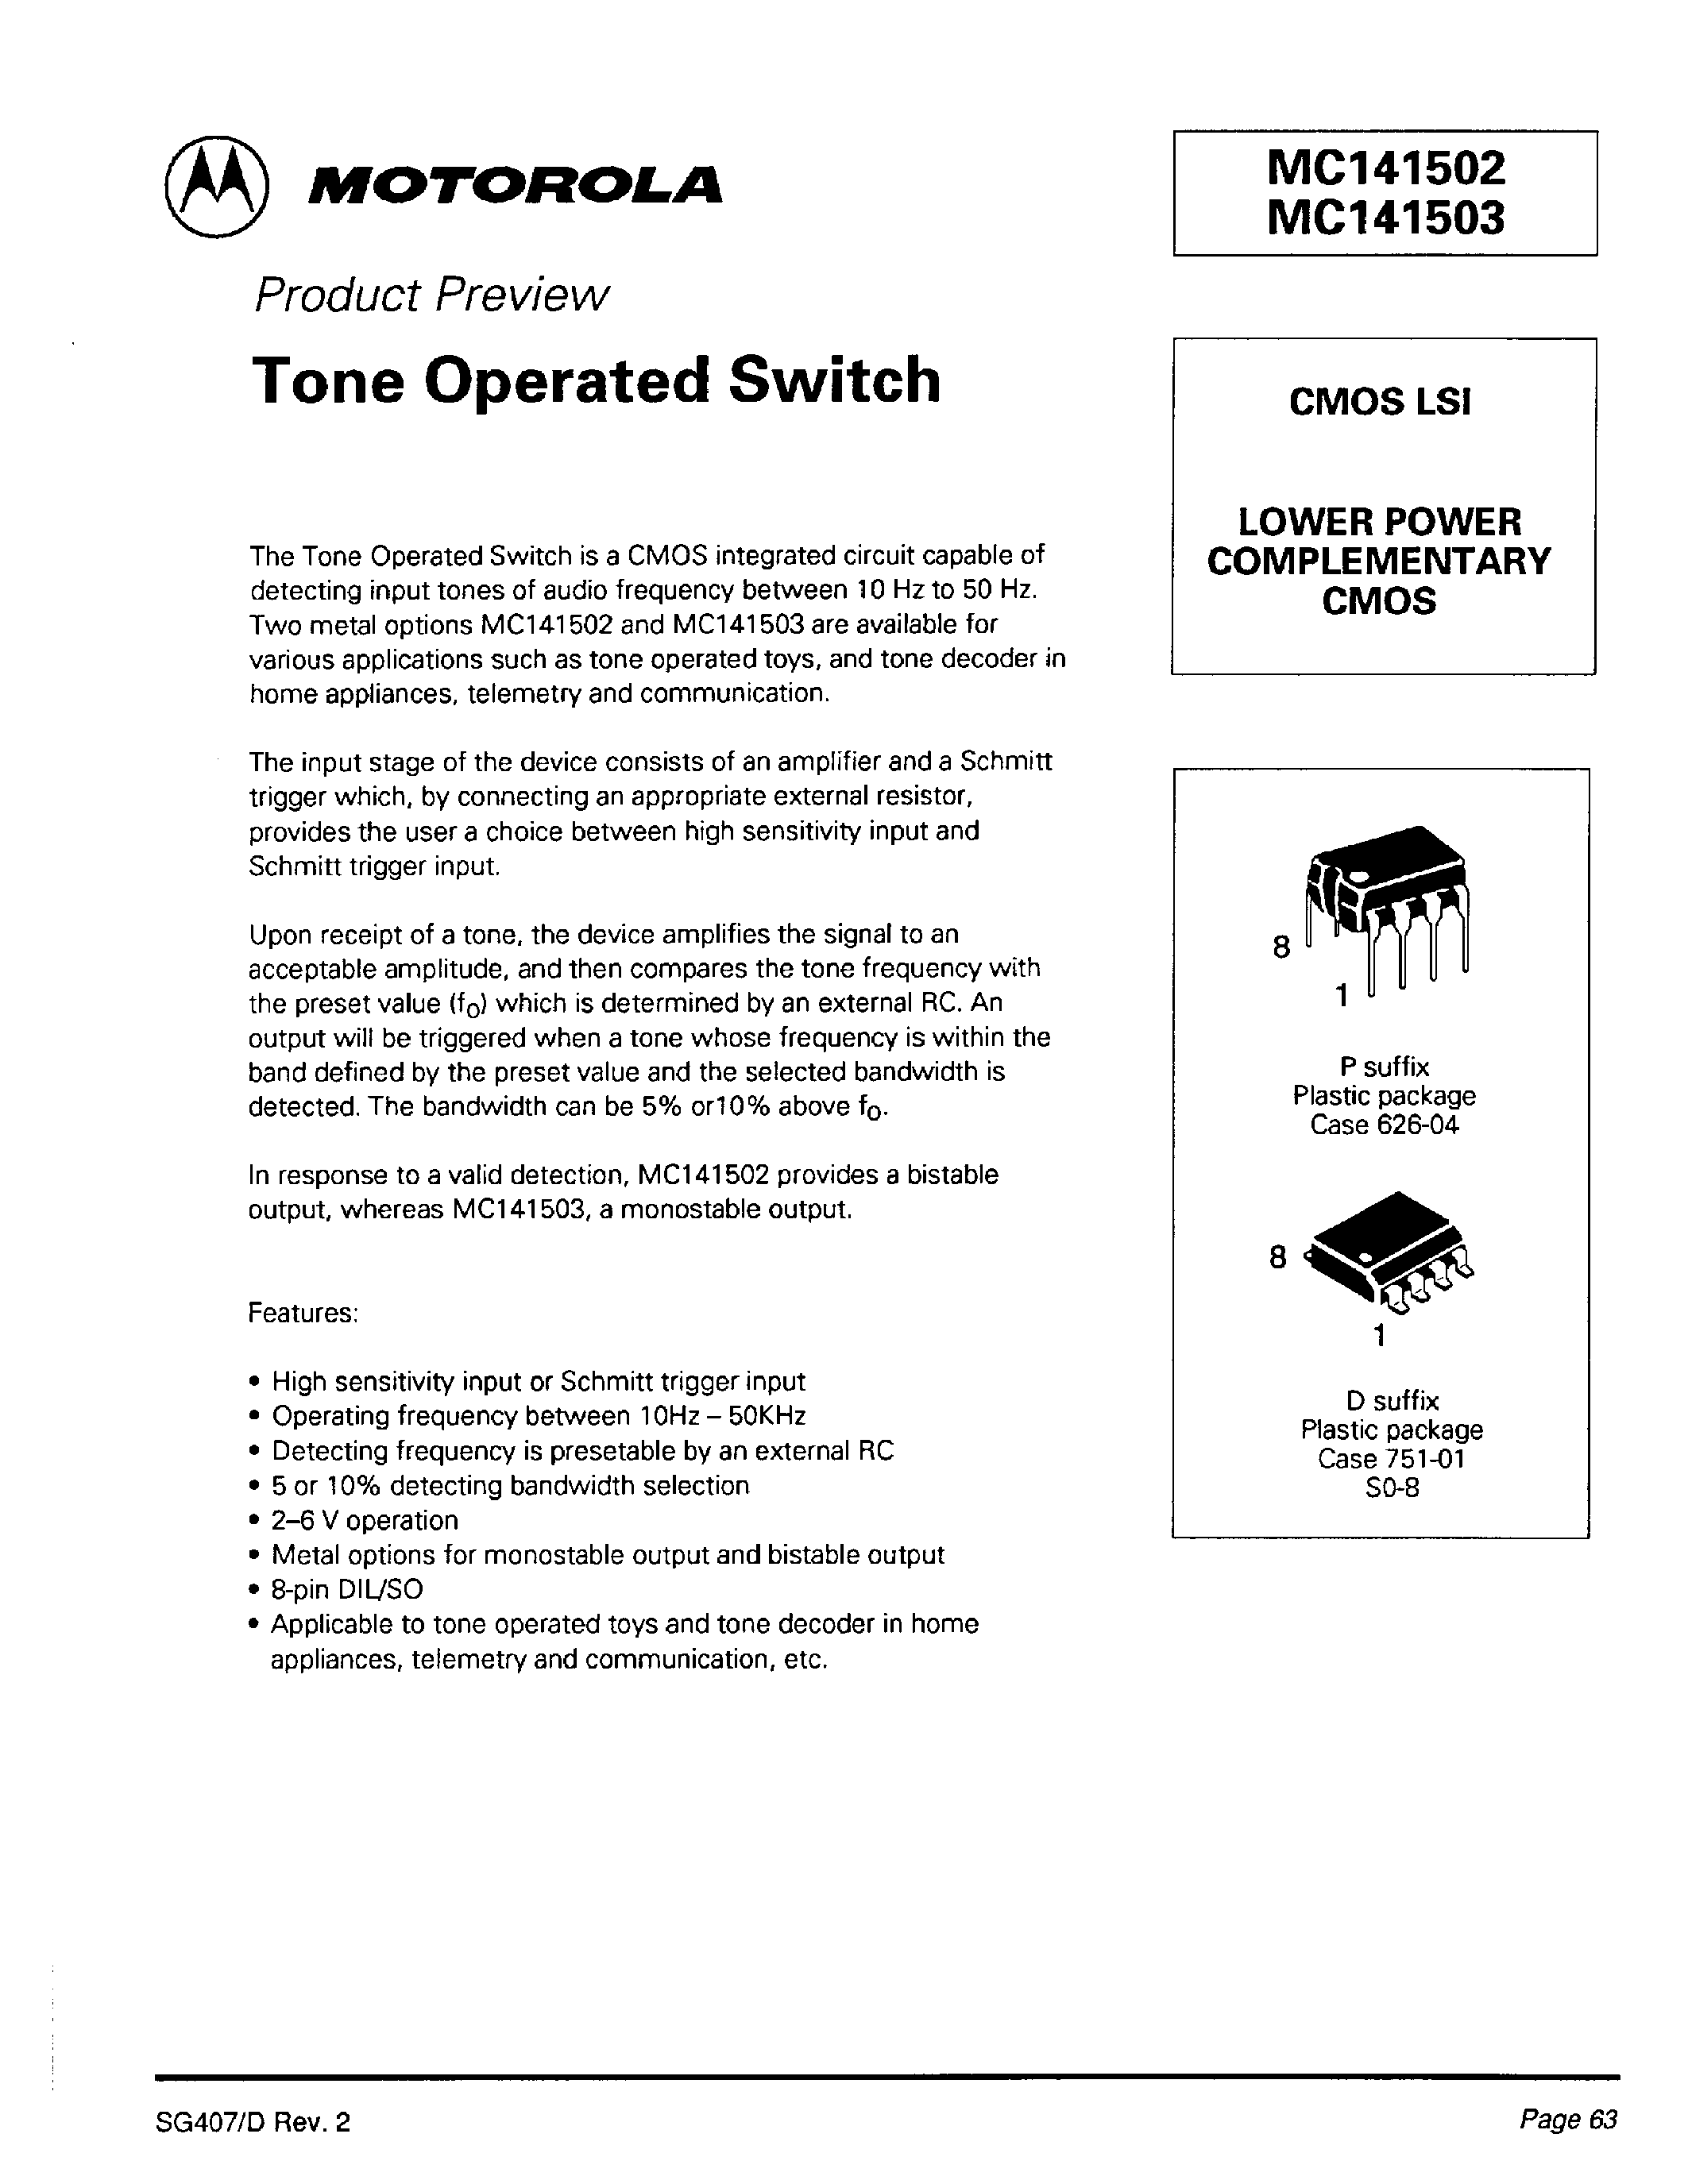 Datasheet MC141503P - Tone Operated Switch page 1